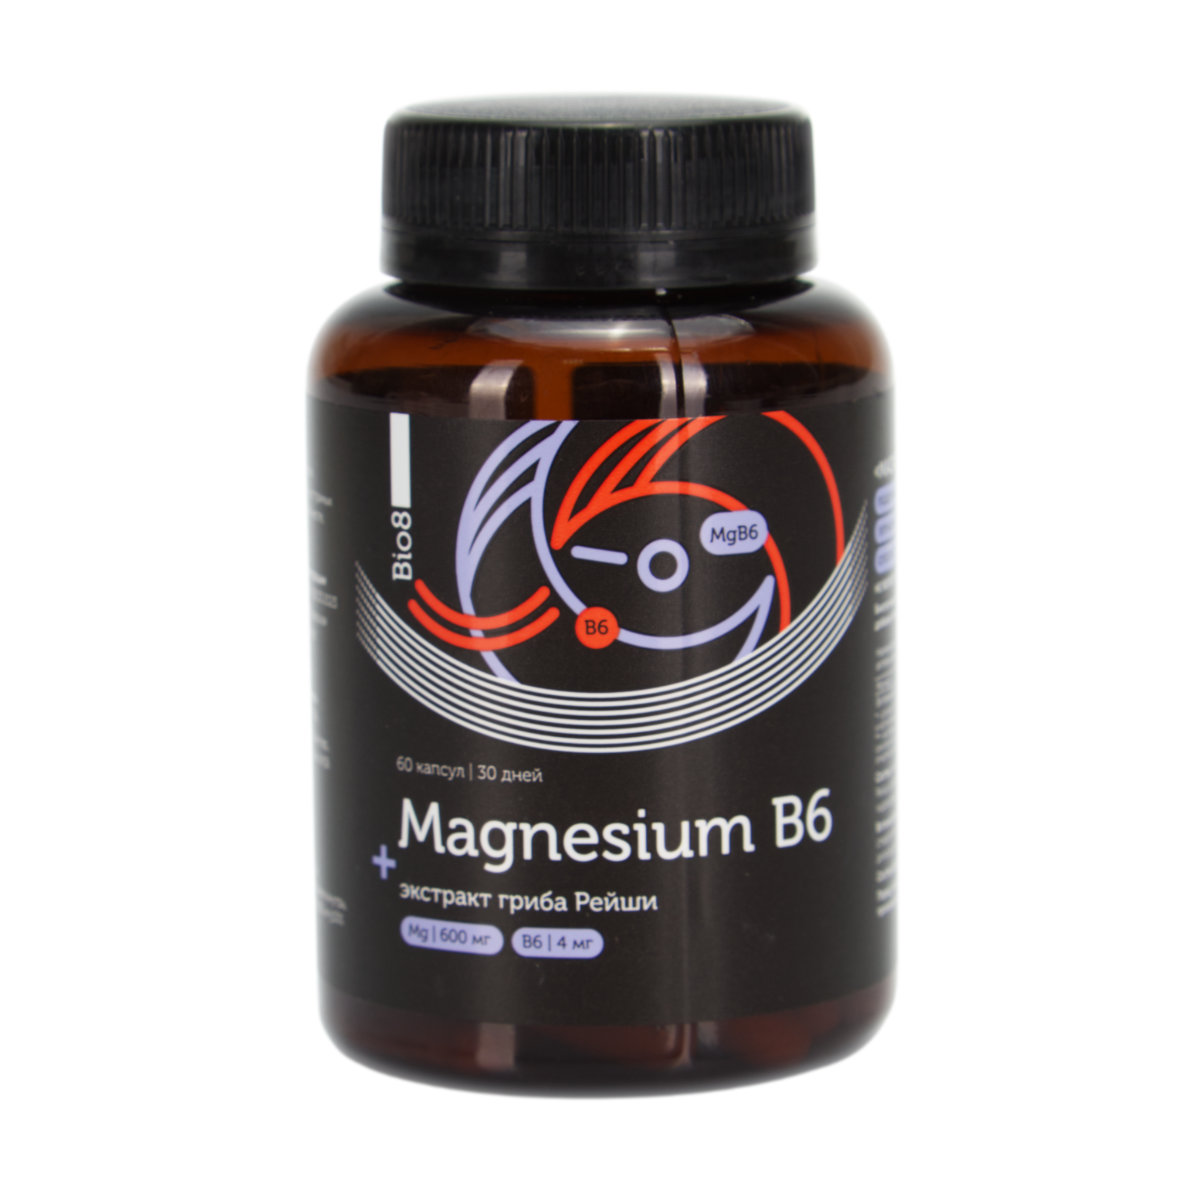 Магнезиум B6 + экстракт гриба Рейши Bio8, капсулы (60 шт.) магнезиум хелат комплекс b6 120 шт капсулы